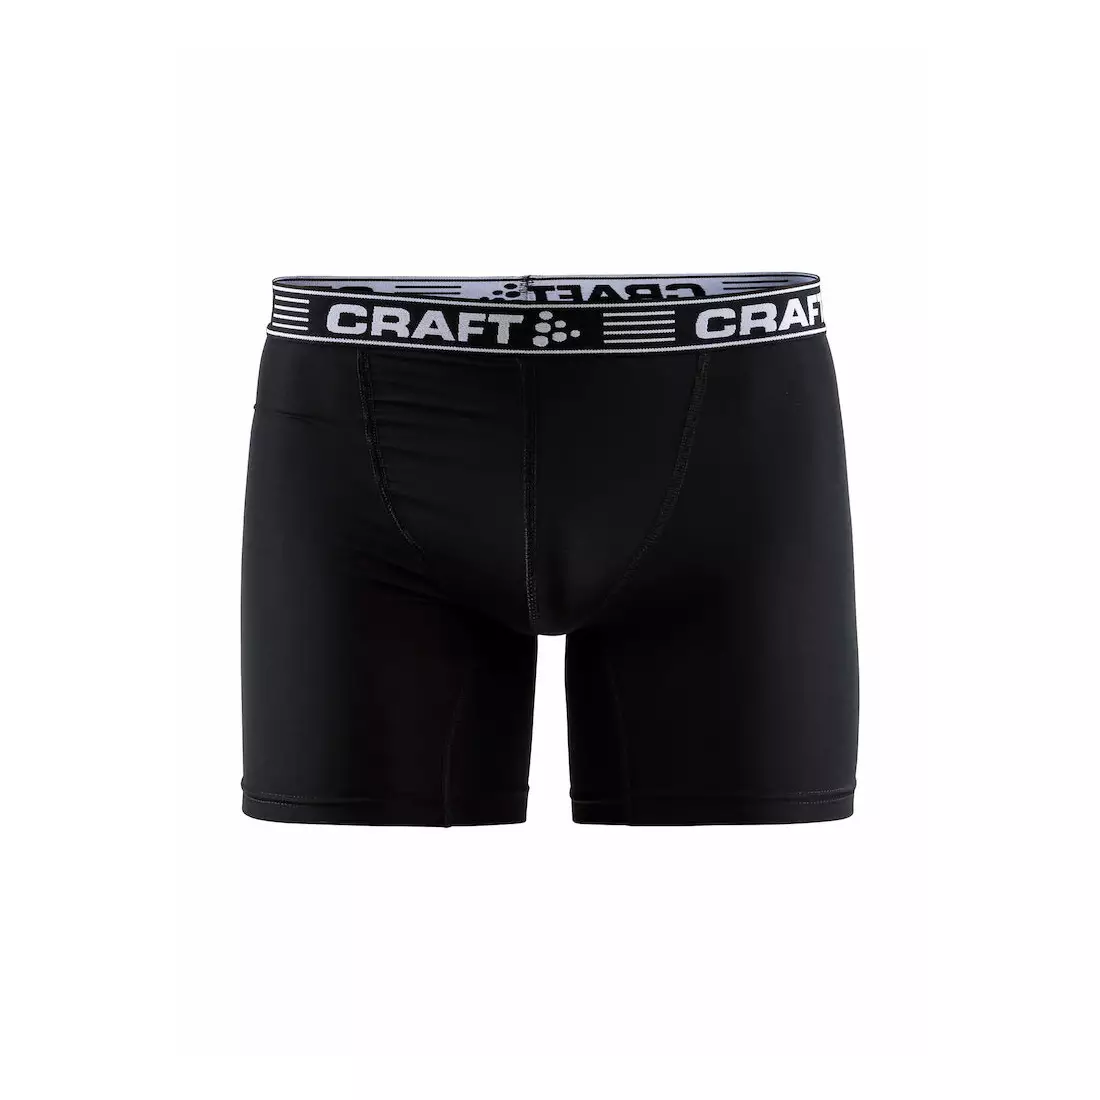 CRAFT 6-INCH pánské sportovní boxerky, černé 1905489-9900